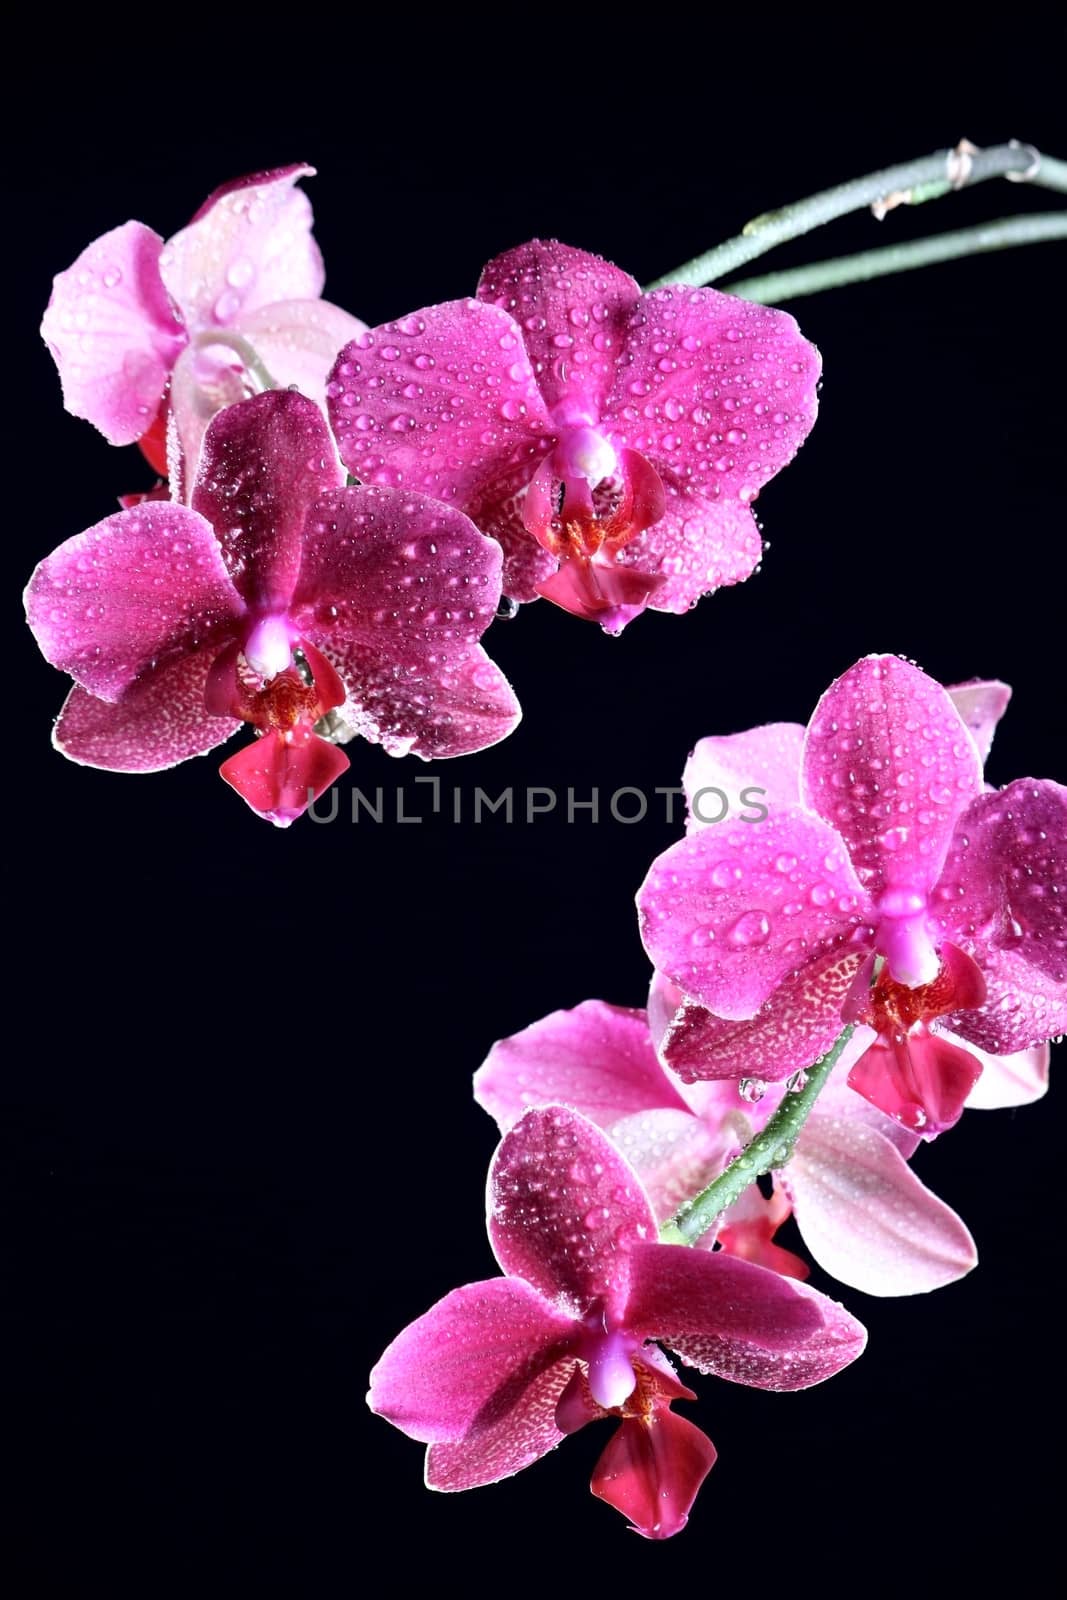 Orchid in a flowerpot by dedmorozz